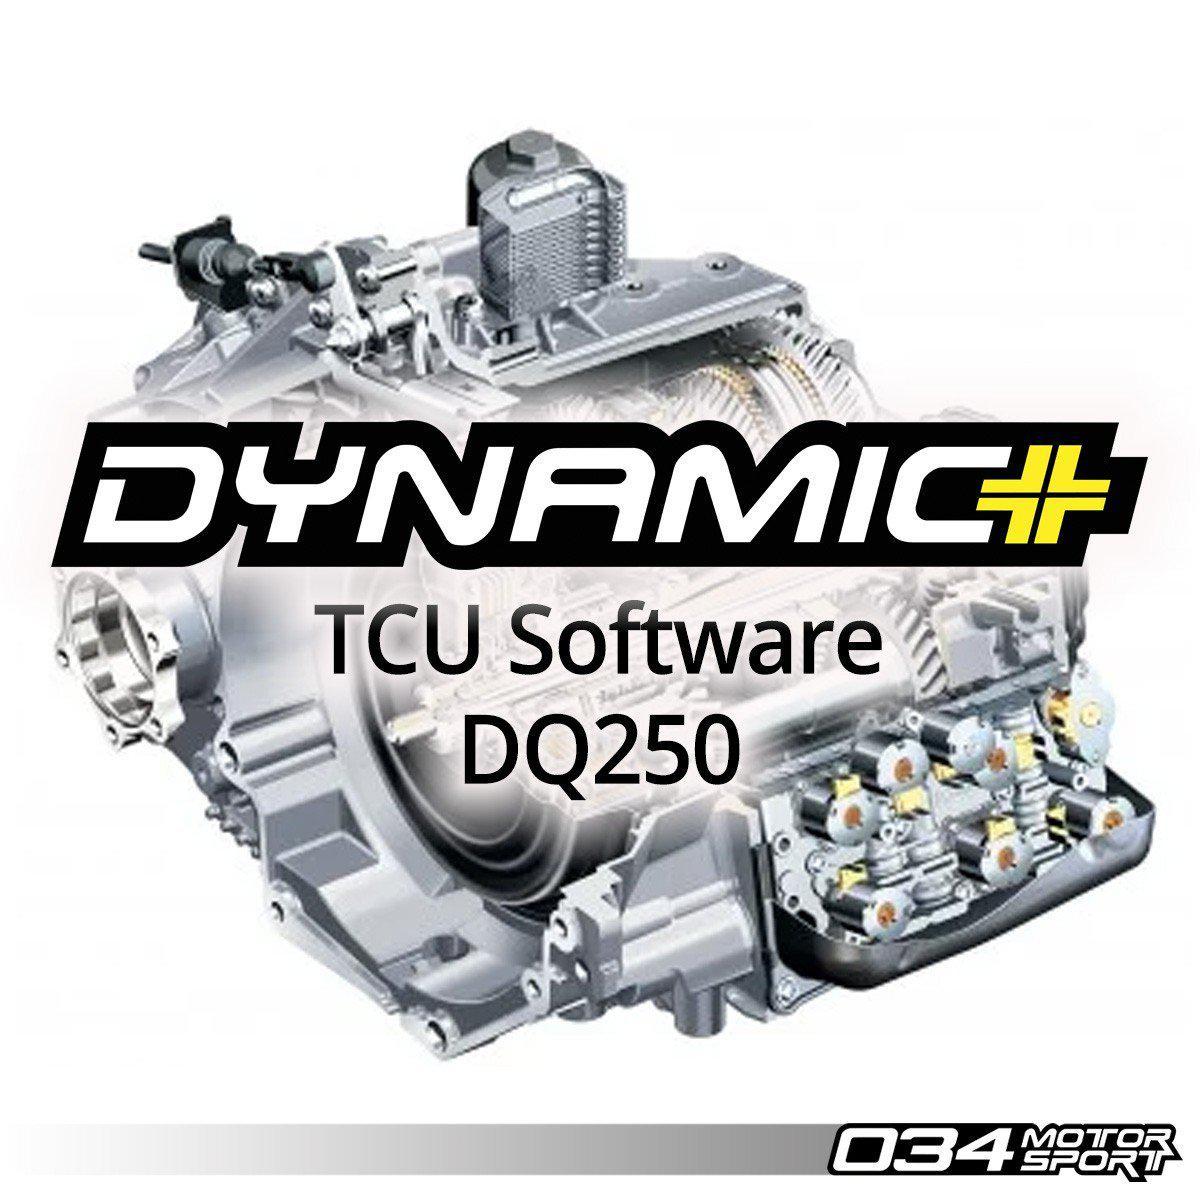 Dsg Software Upgrade For MKV/MKVI Volkswagen & 8J/8p Audi, Dq250 Transmission-A Little Tuning Co